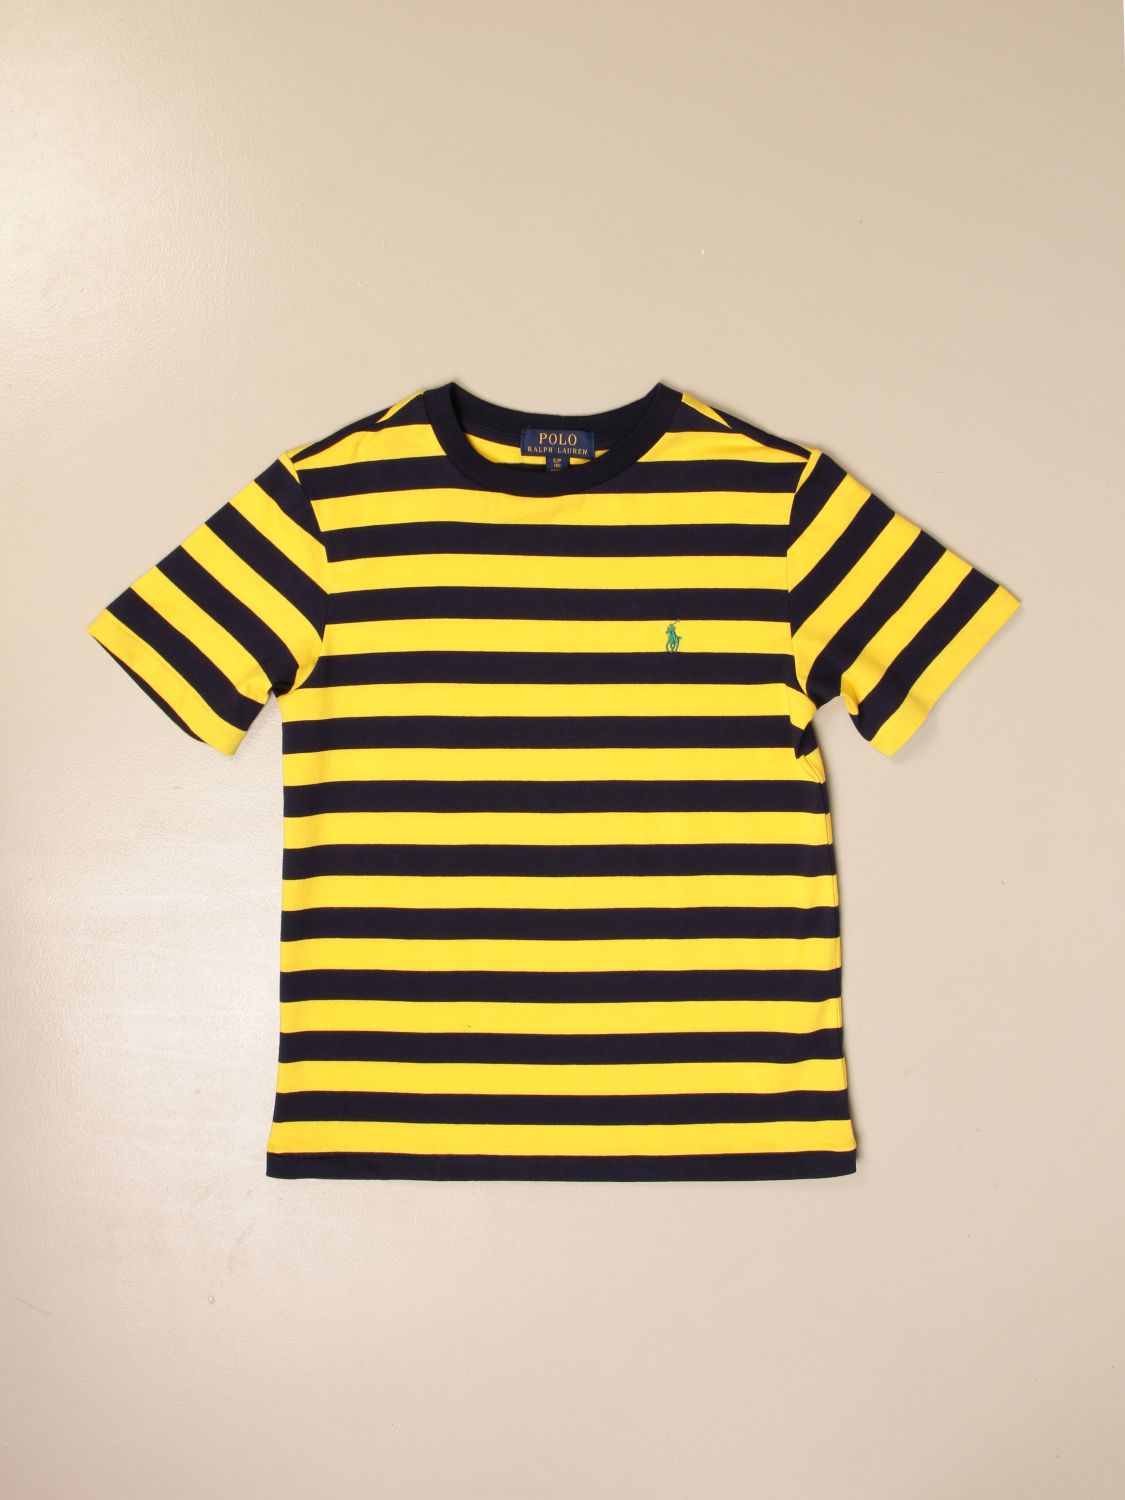 POLO RALPH LAUREN BOY: Striped T-shirt | T-Shirt Polo Ralph Lauren Boy ...